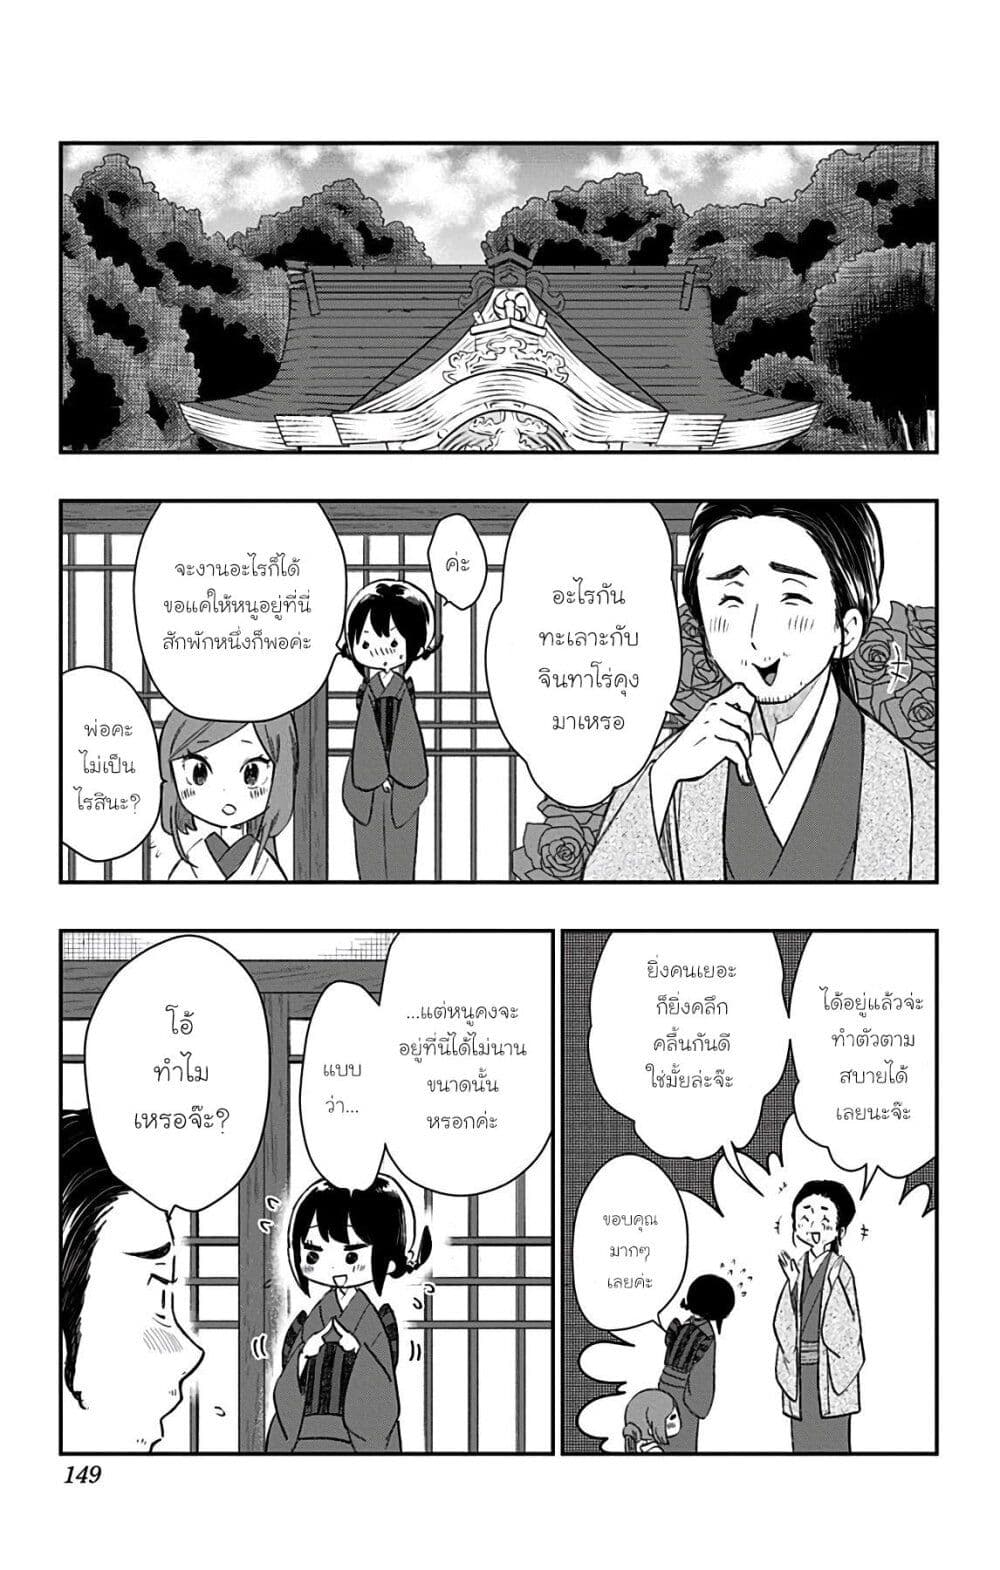 Shouwa Otome Otogibanashi เรื่องเล่าของสาวน้อย ยุคโชวะ ตอนที่ 33 (1)